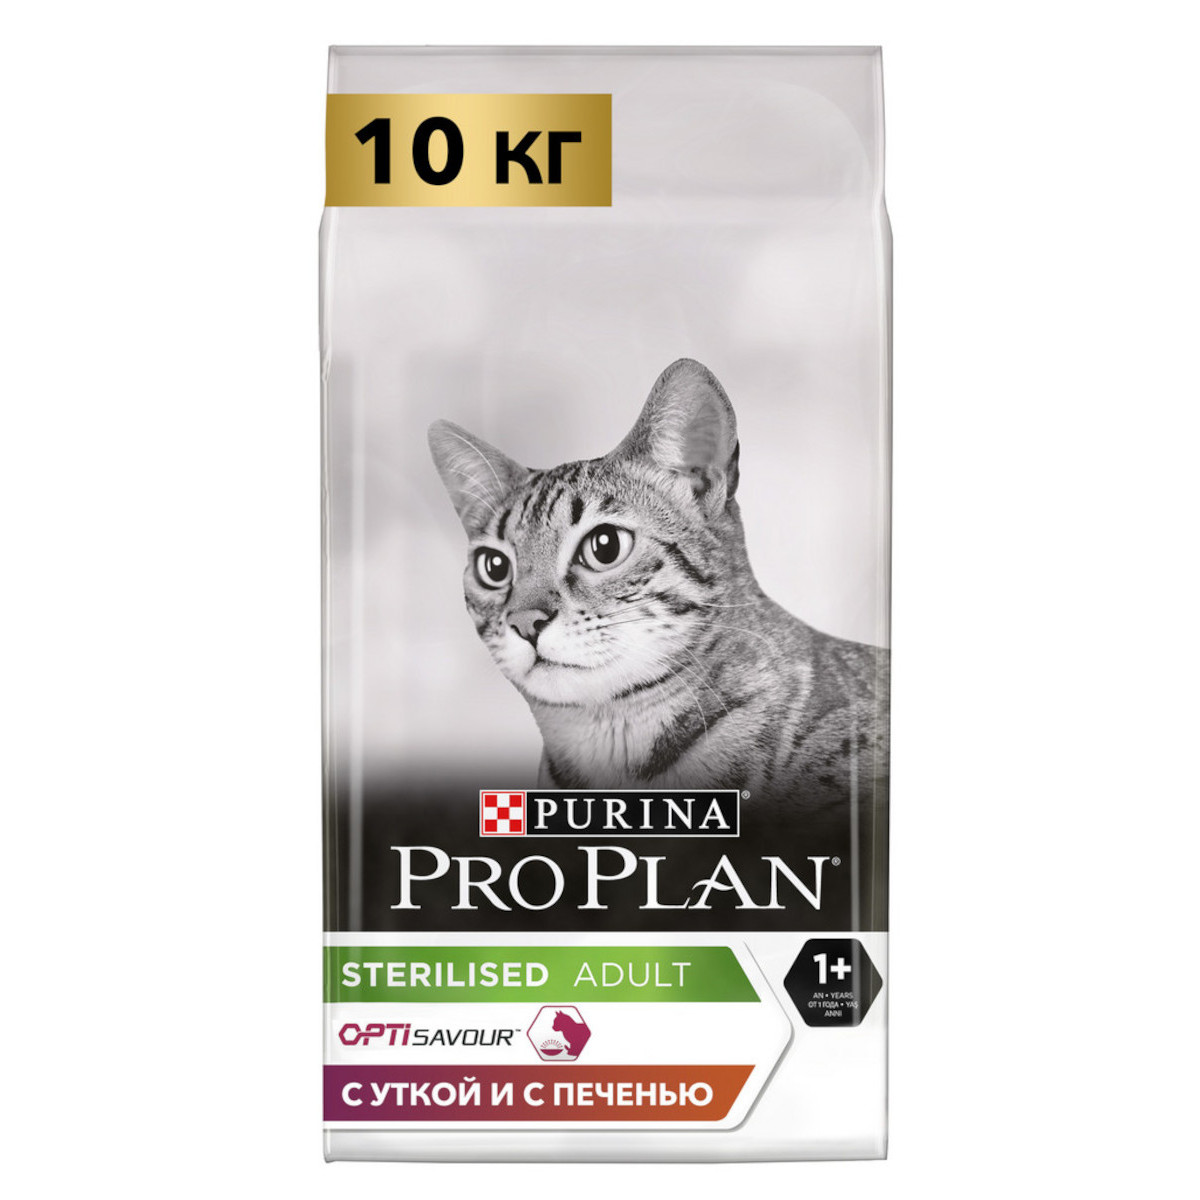 Сухой корм для кошек ProPlan, для стерилизованных кошек, утка, печень, 10 кг